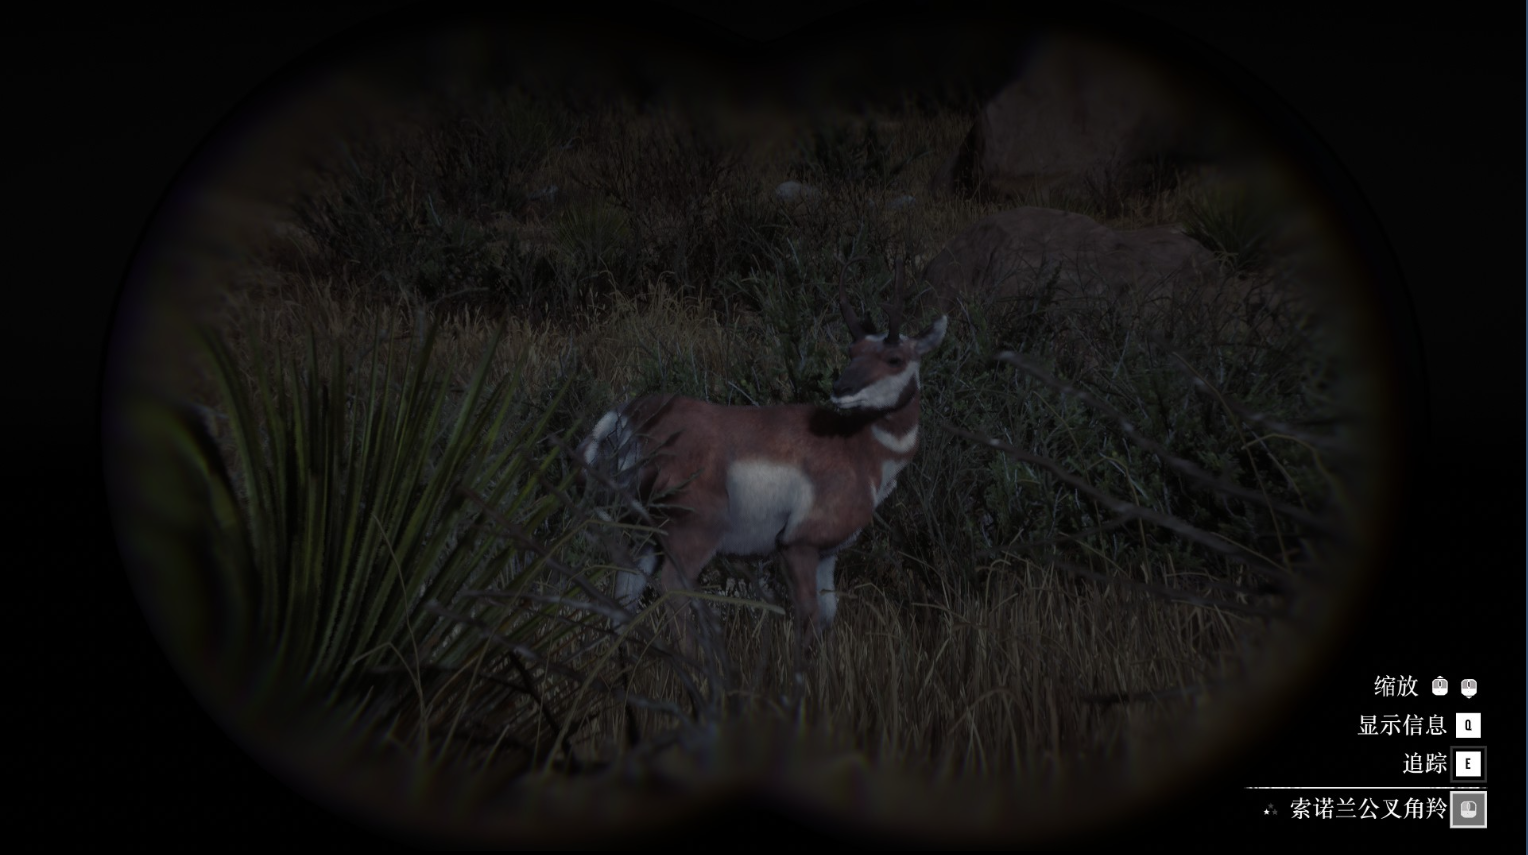 《荒野大镖客2》动物索诺兰公叉角羚在哪里找